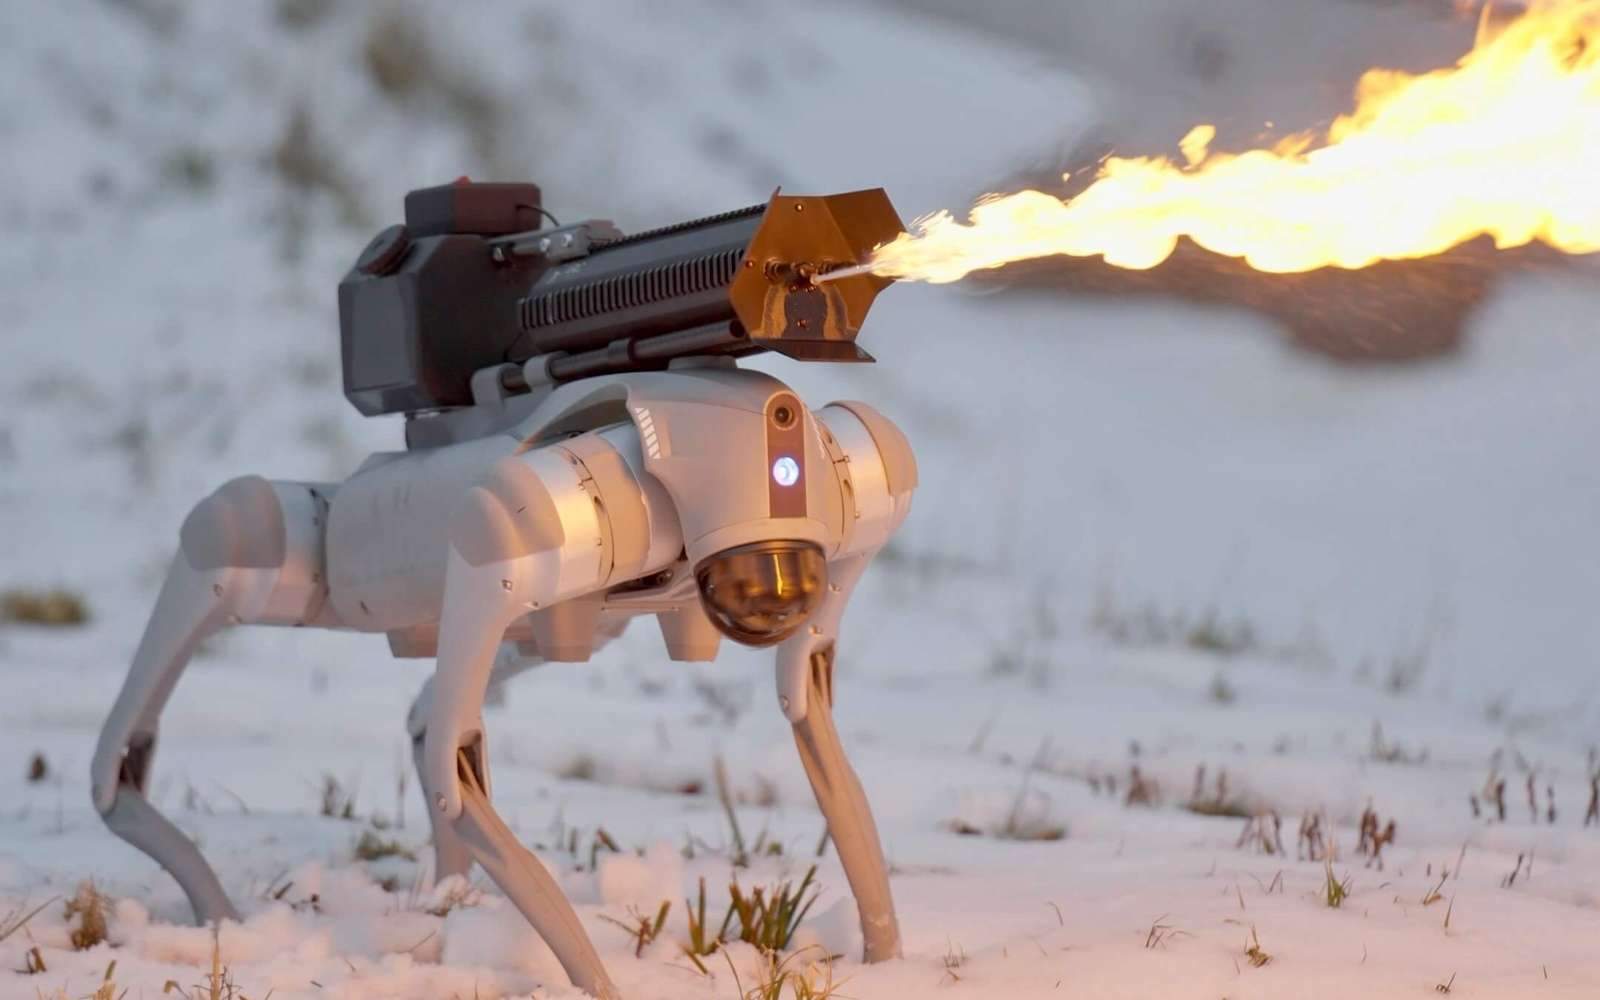 Préparez-vous à courir : le robot-chien lance-flammes est désormais en vente libre !